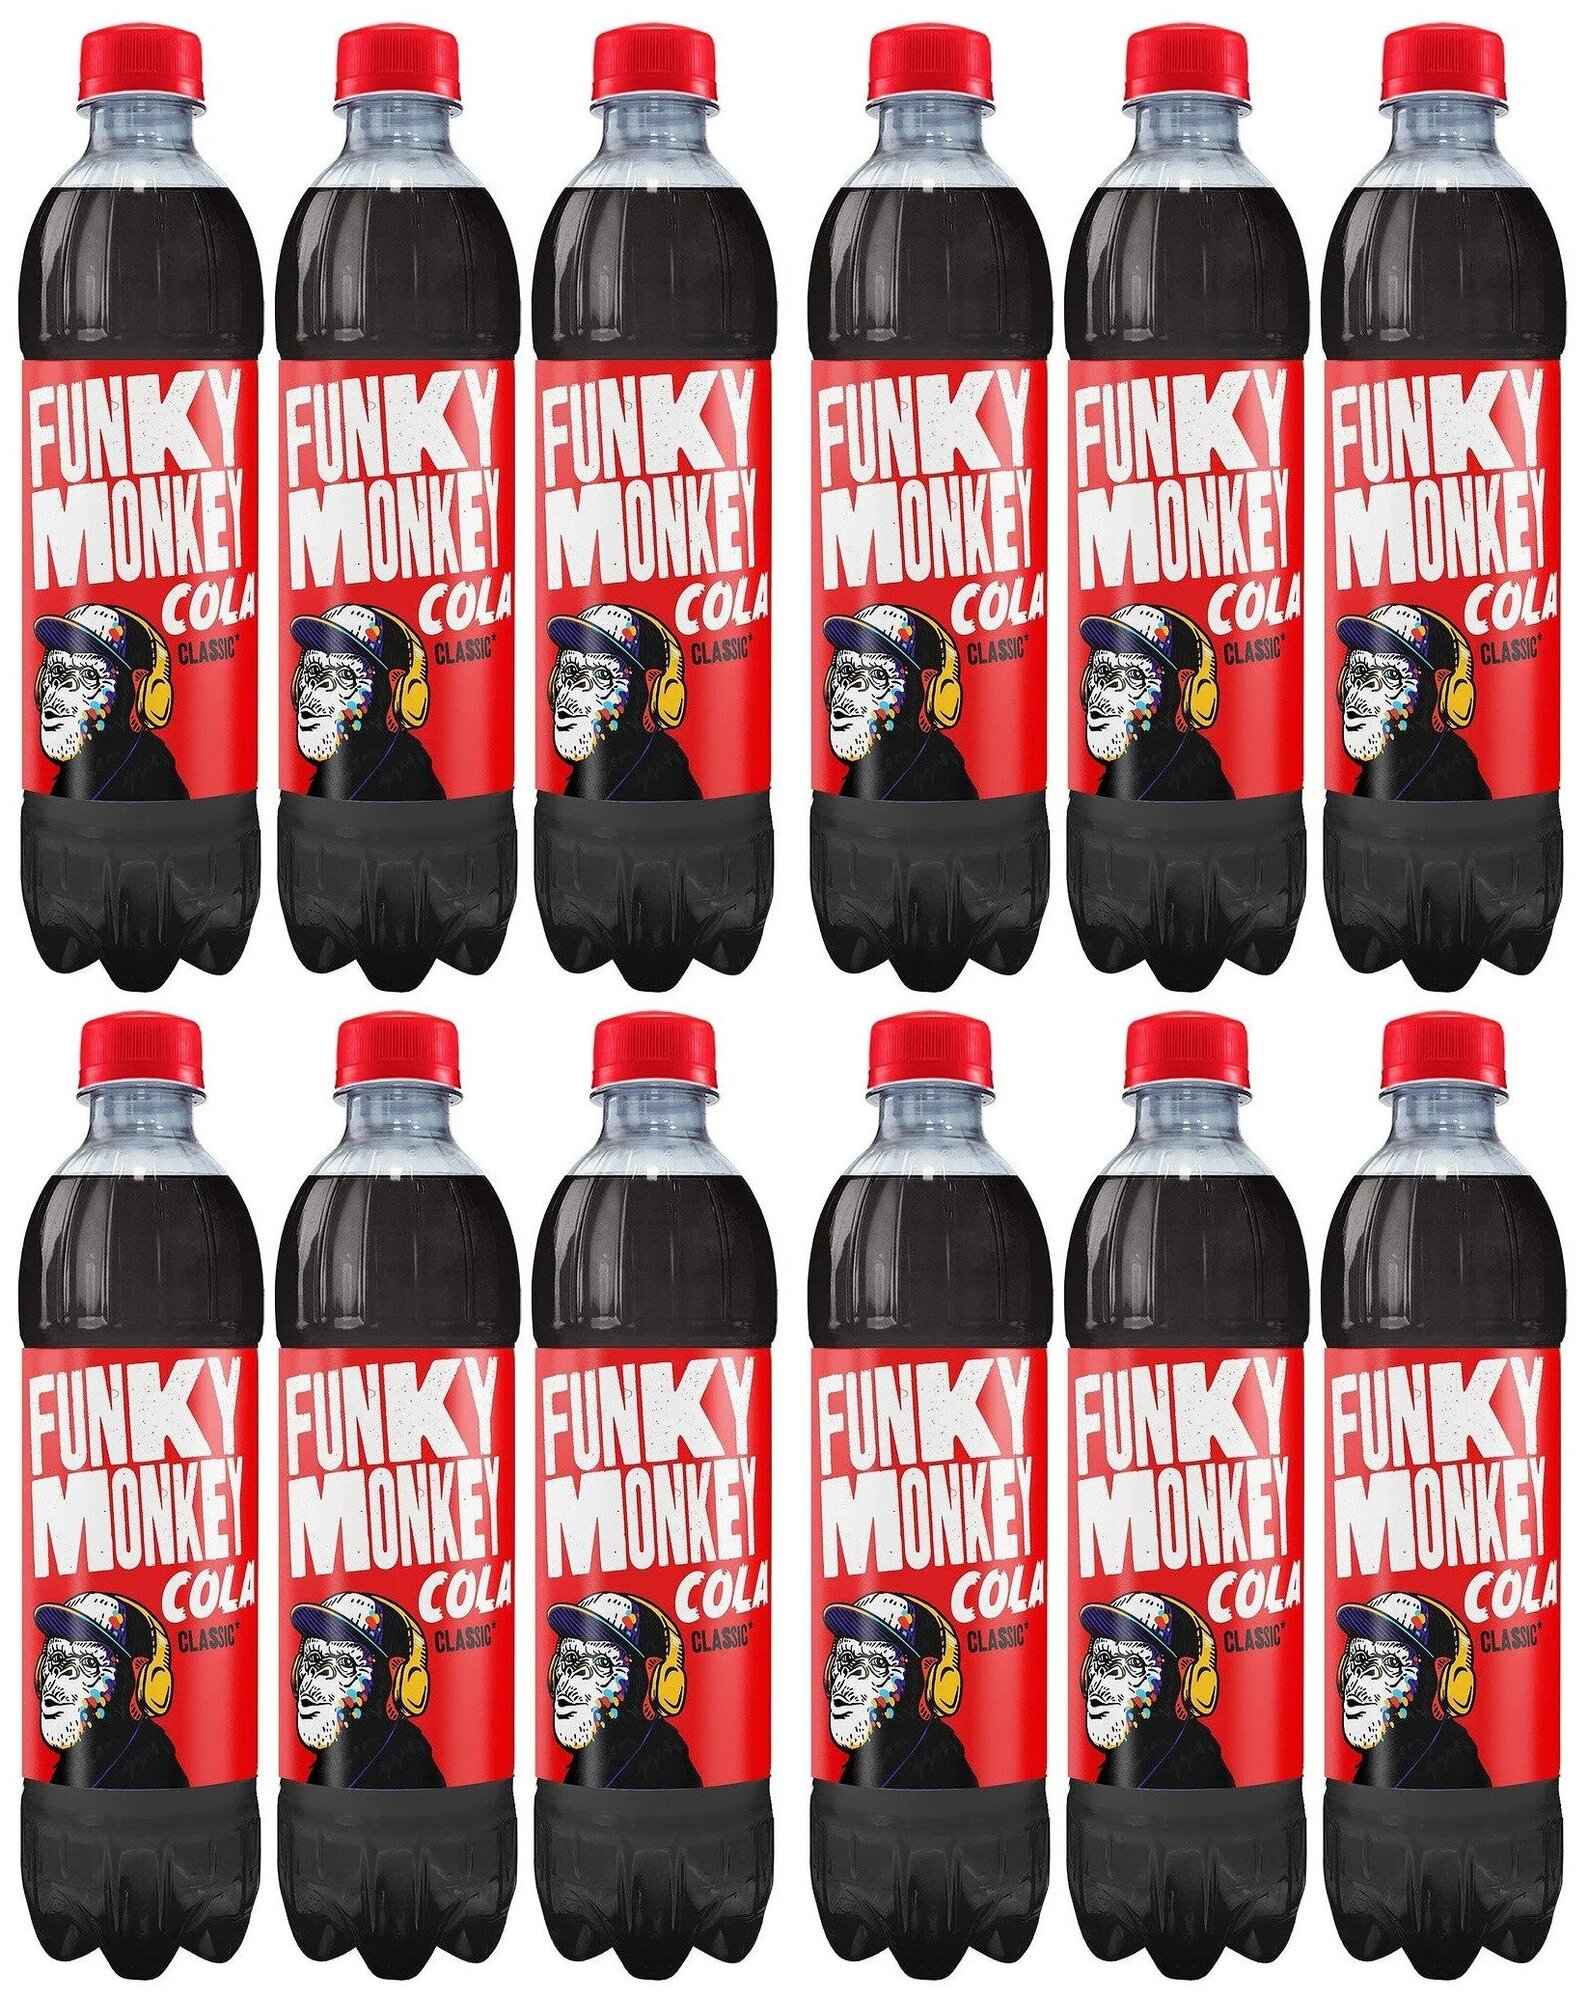 Funky monkey 05 л